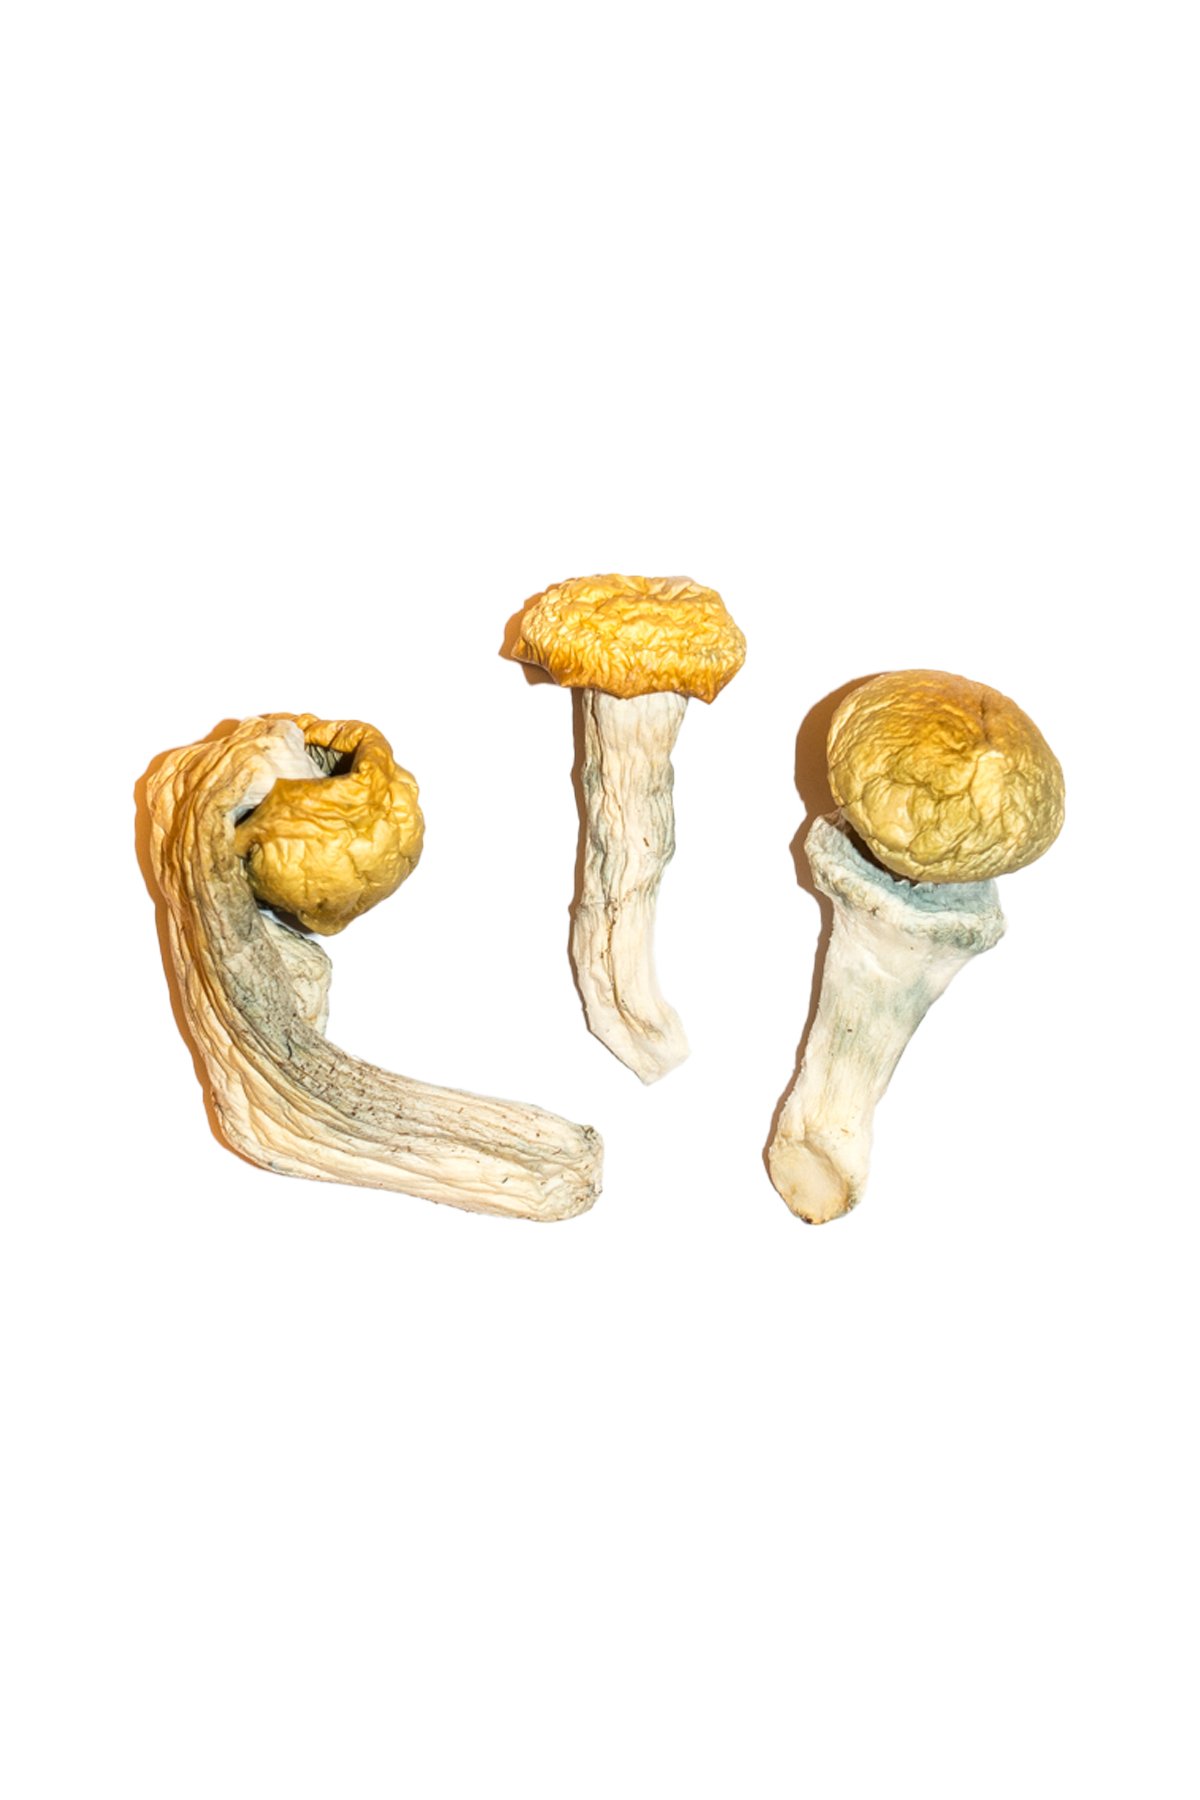 Penis Envy Magic Mushrooms for sale